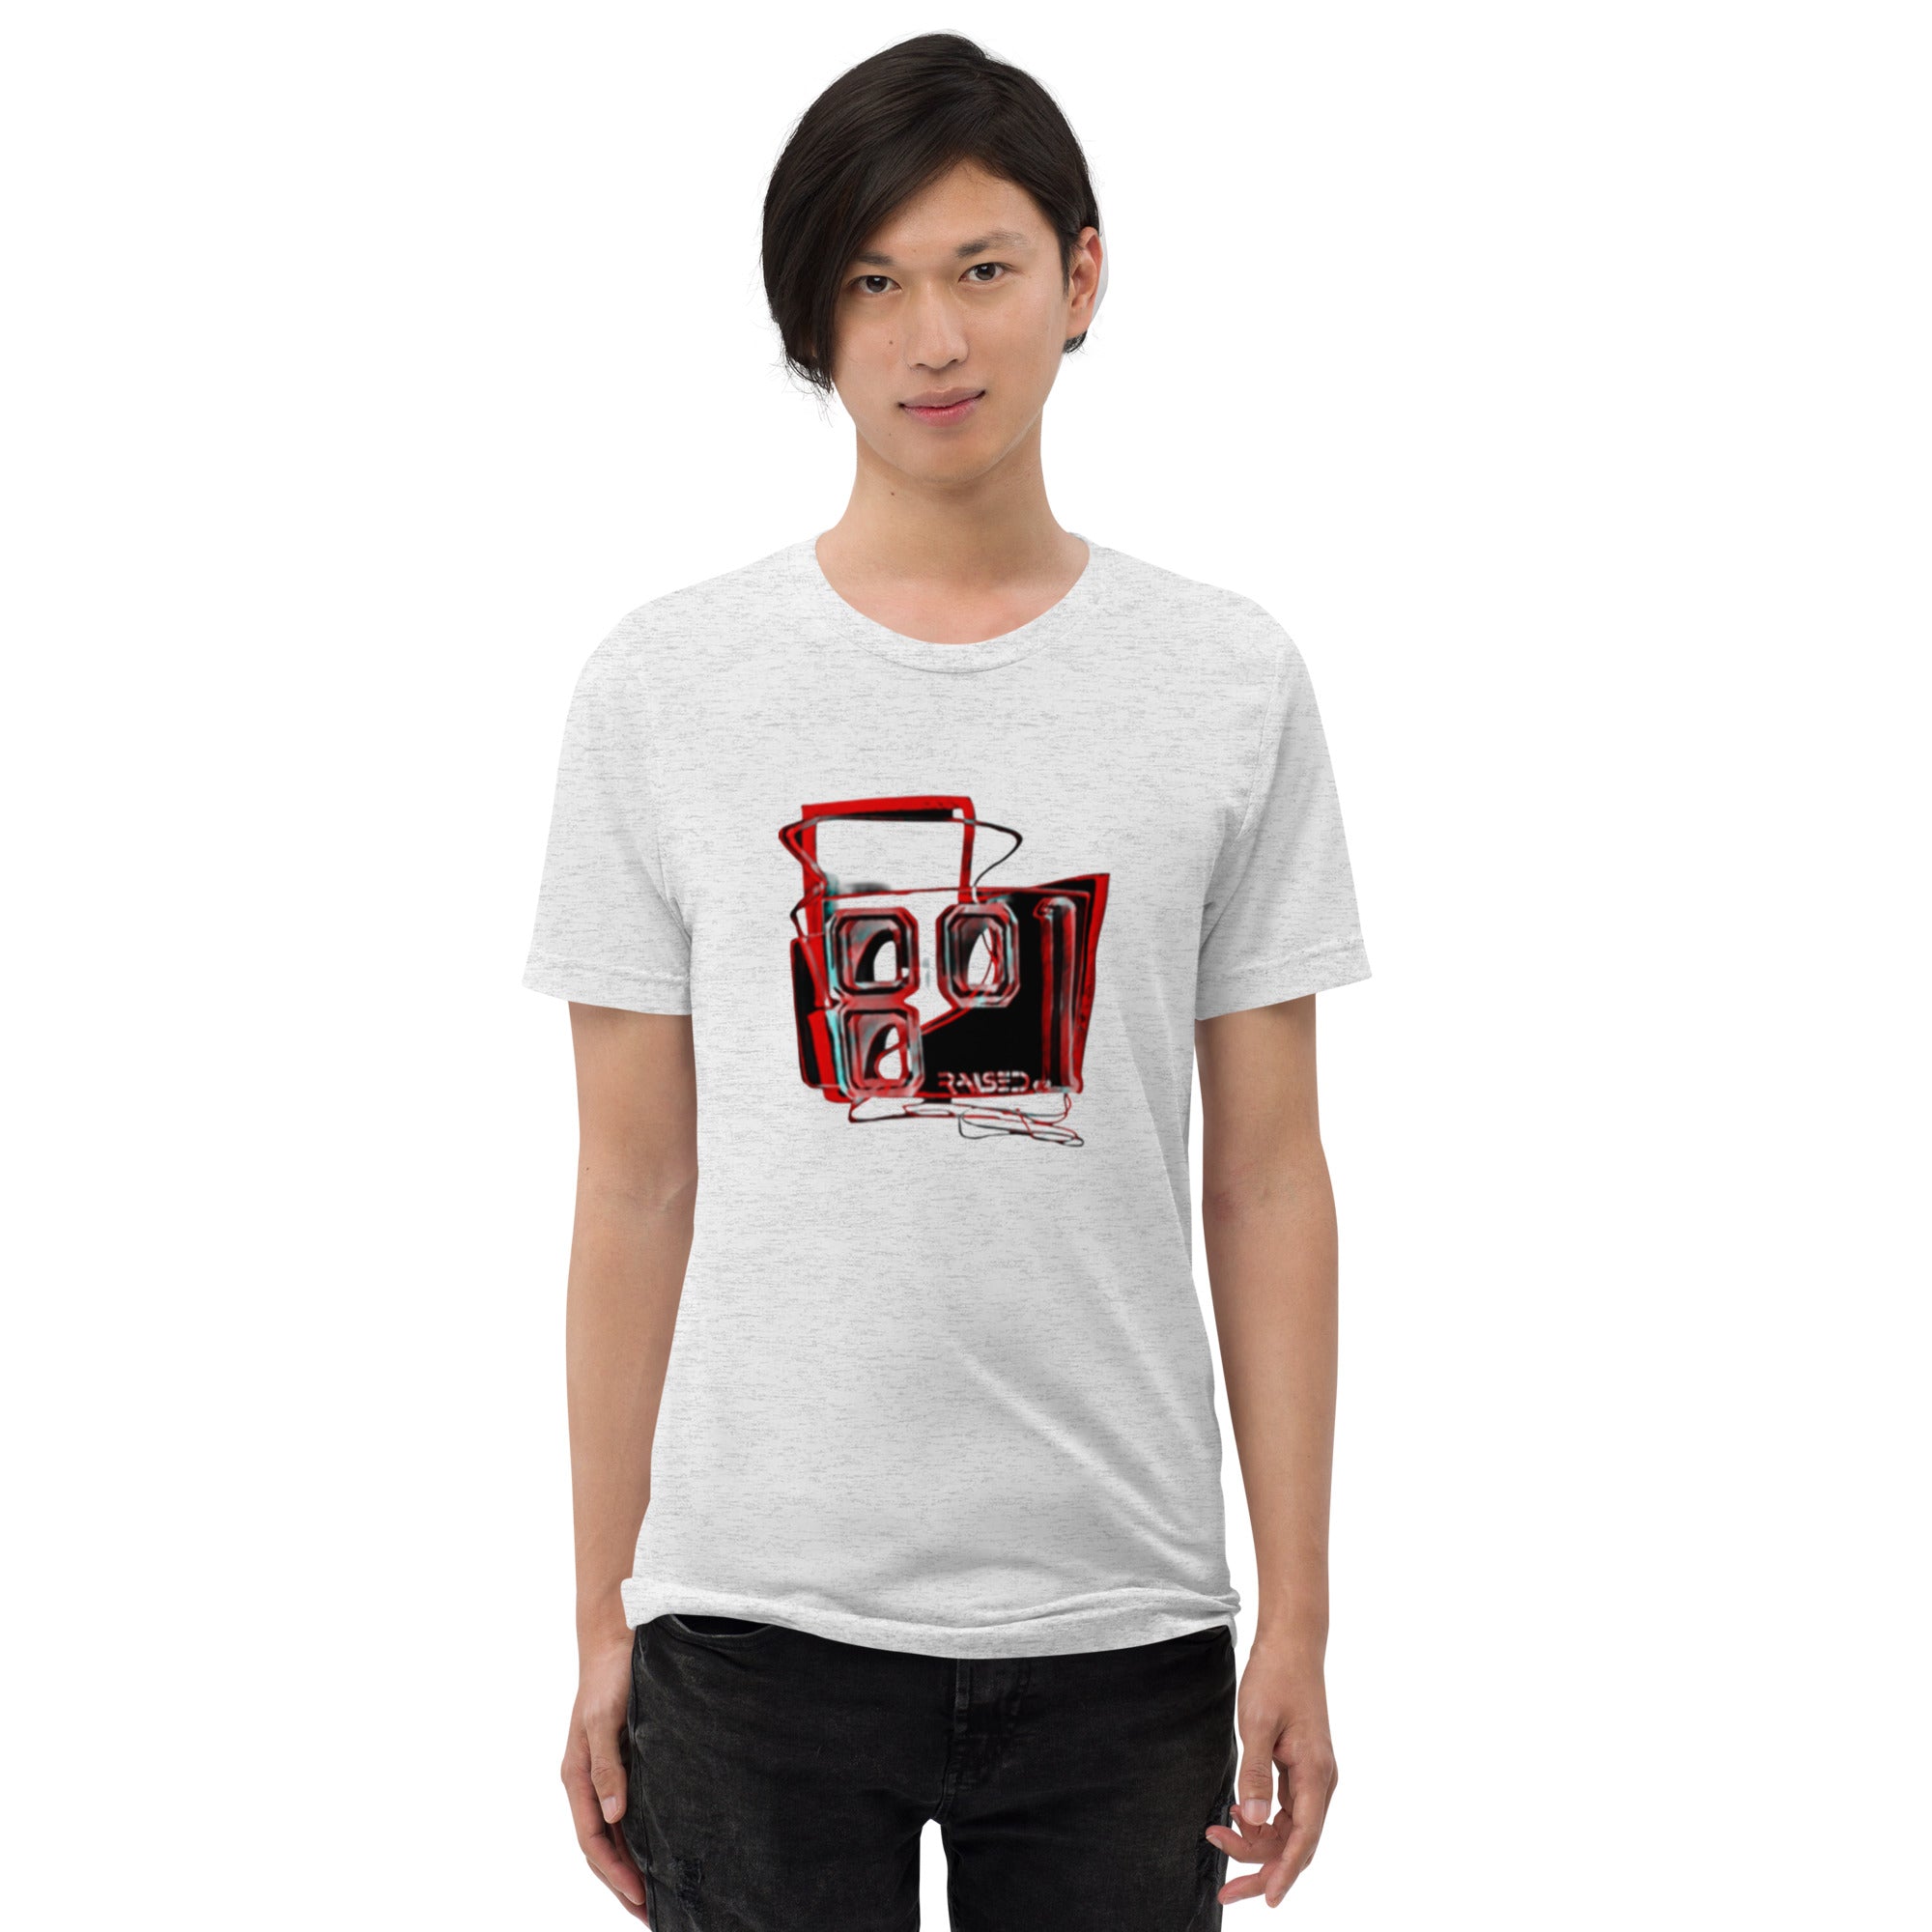 Short Sleeve abca.ogden Tri-blend T-shirt - 801raised